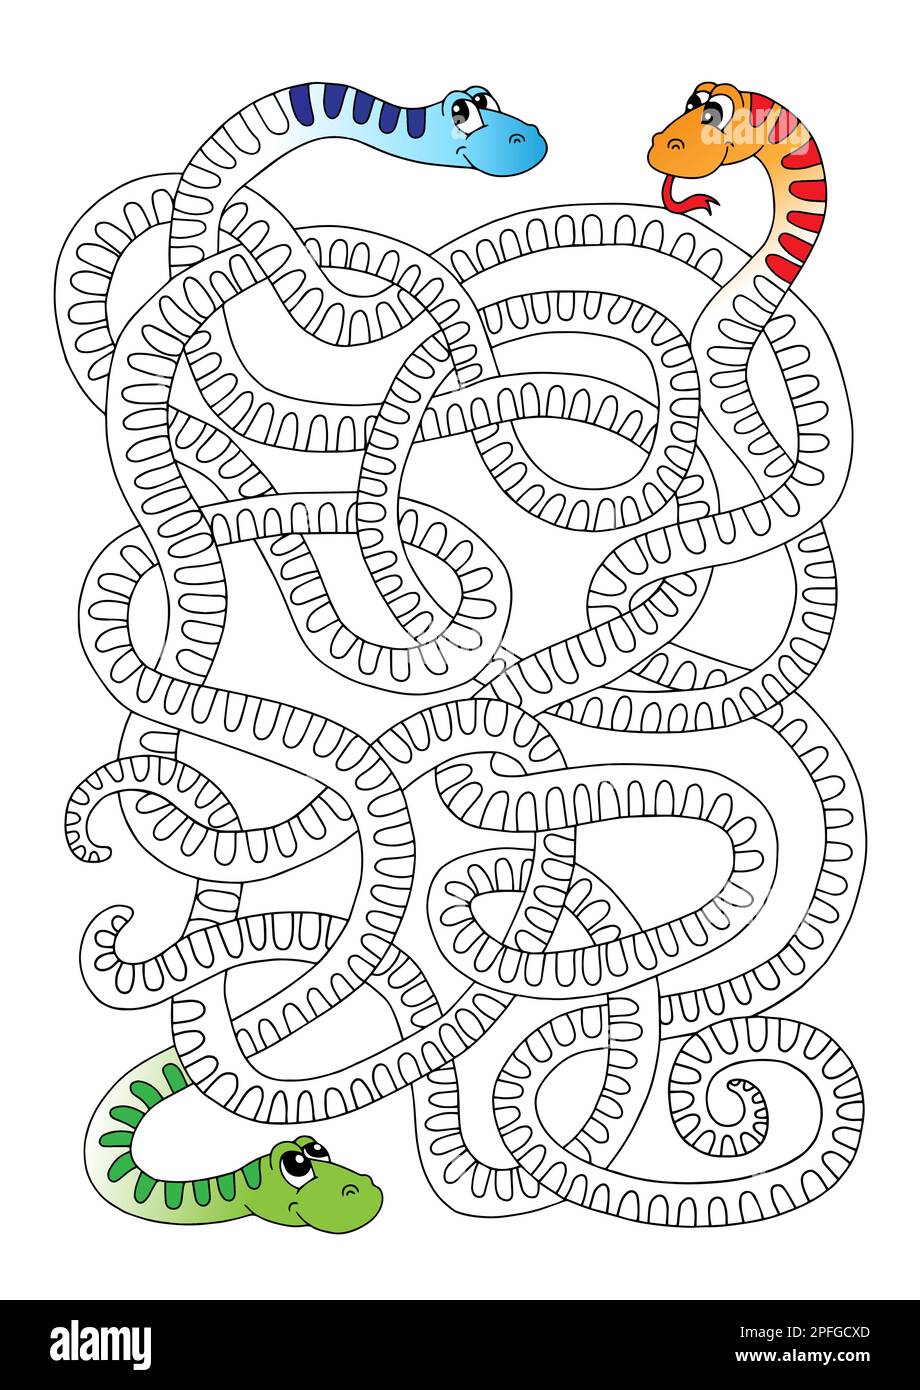 Jeu de labyrinthe pour les enfants, serpents entremêlés amusants Illustration de Vecteur